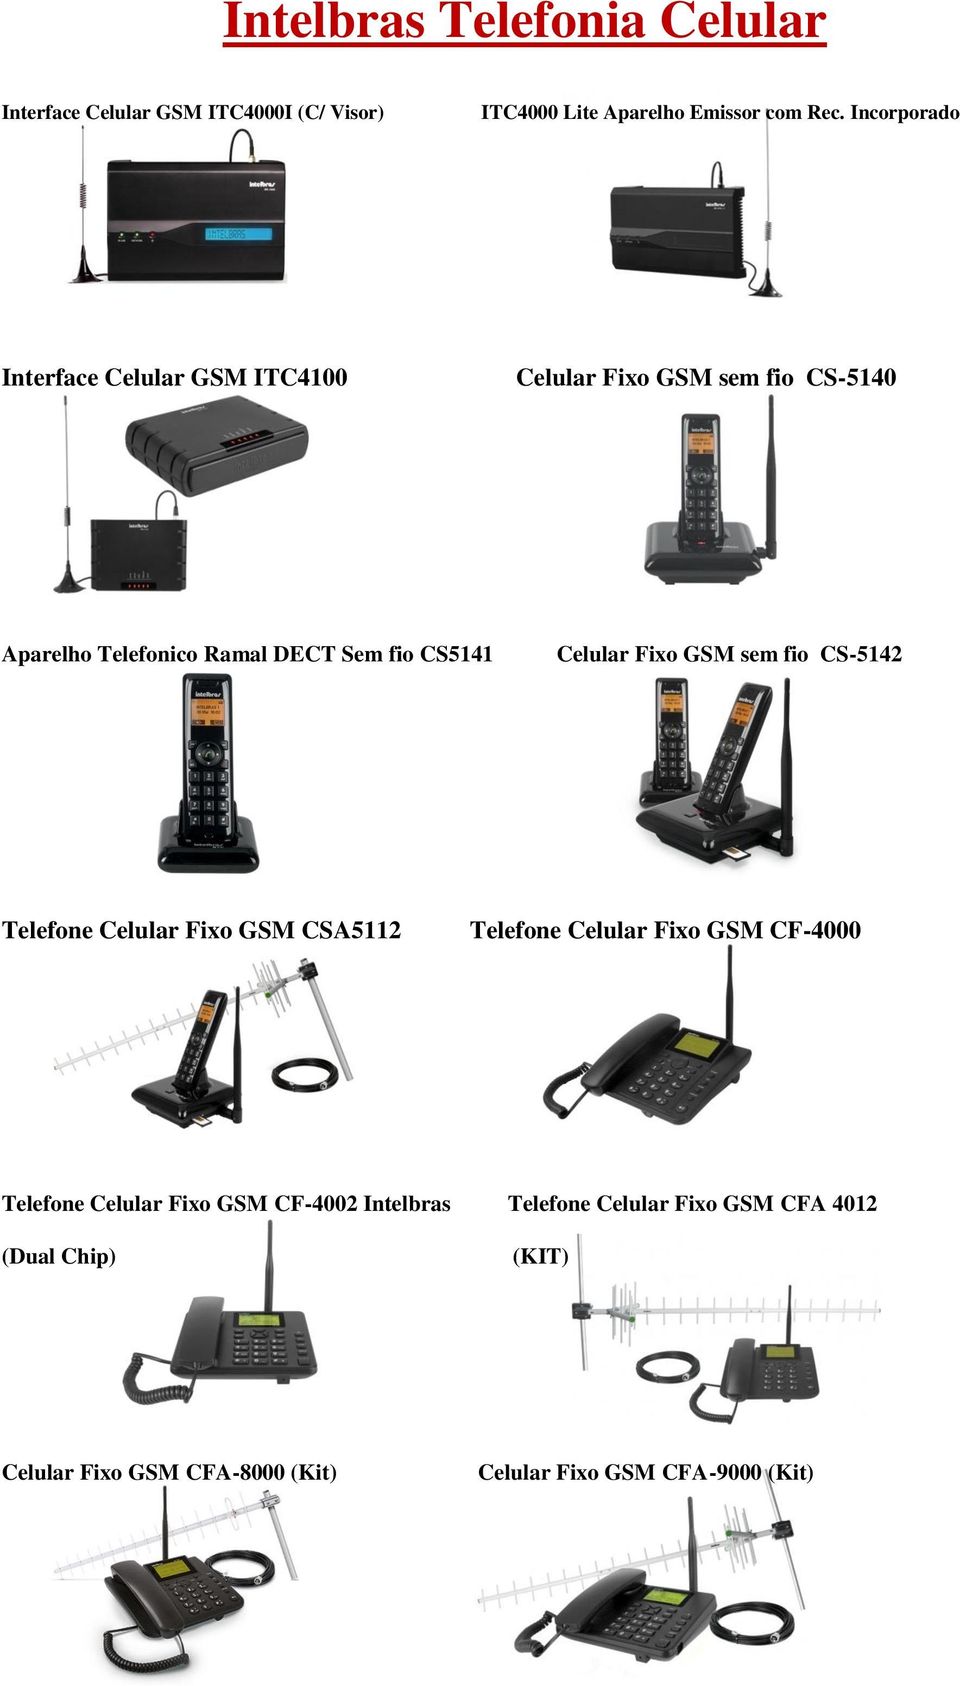 Celular Fixo GSM sem fio CS-5142 Telefone Celular Fixo GSM CSA5112 Telefone Celular Fixo GSM CF-4000 Telefone Celular Fixo